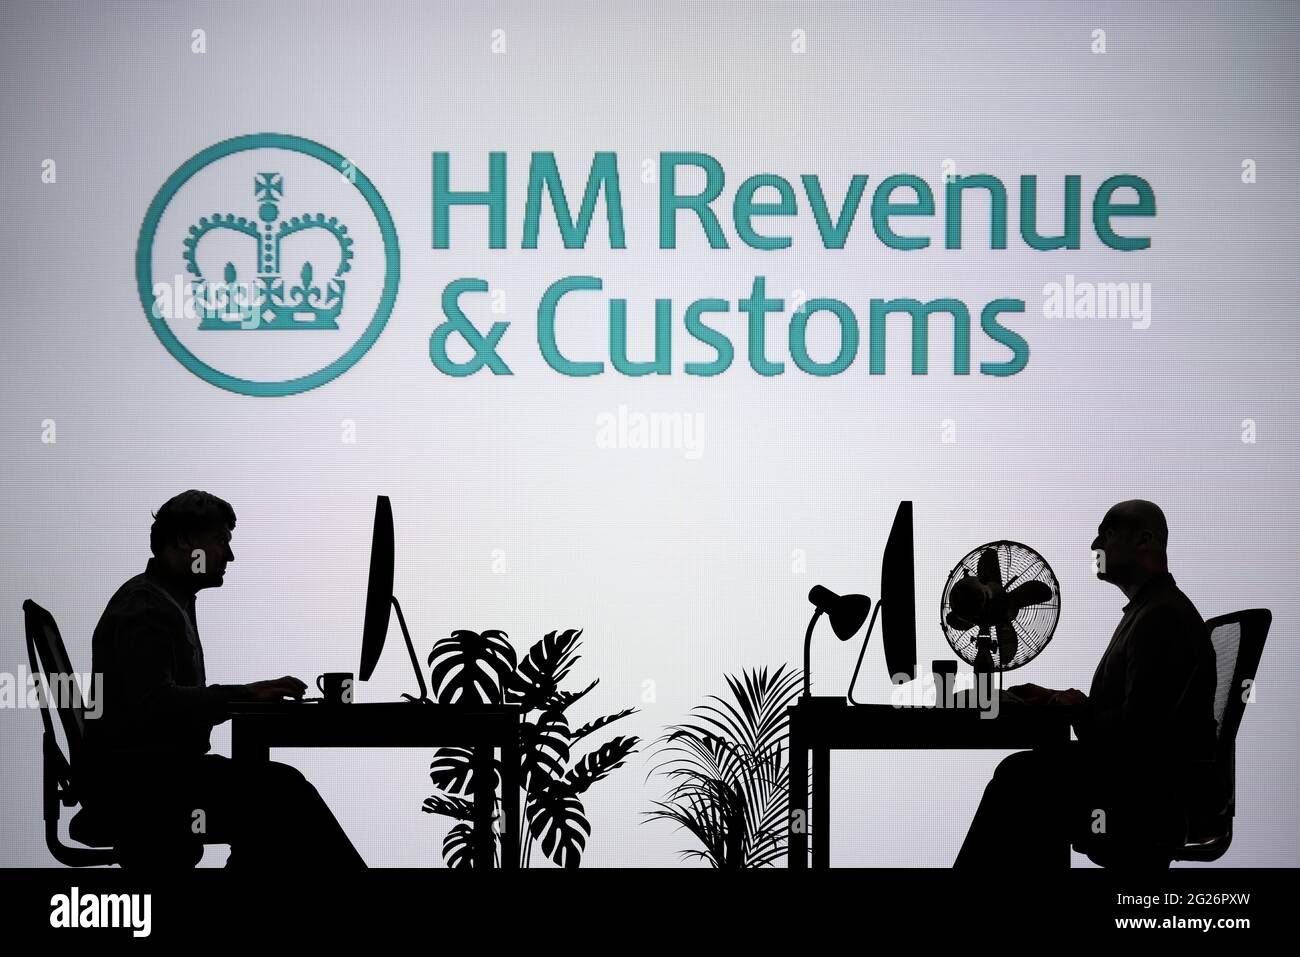 El logotipo de HMRC se ve en una pantalla LED en segundo plano, mientras que dos personas con siluetas trabajan en un entorno de oficina (sólo para uso editorial) Foto de stock